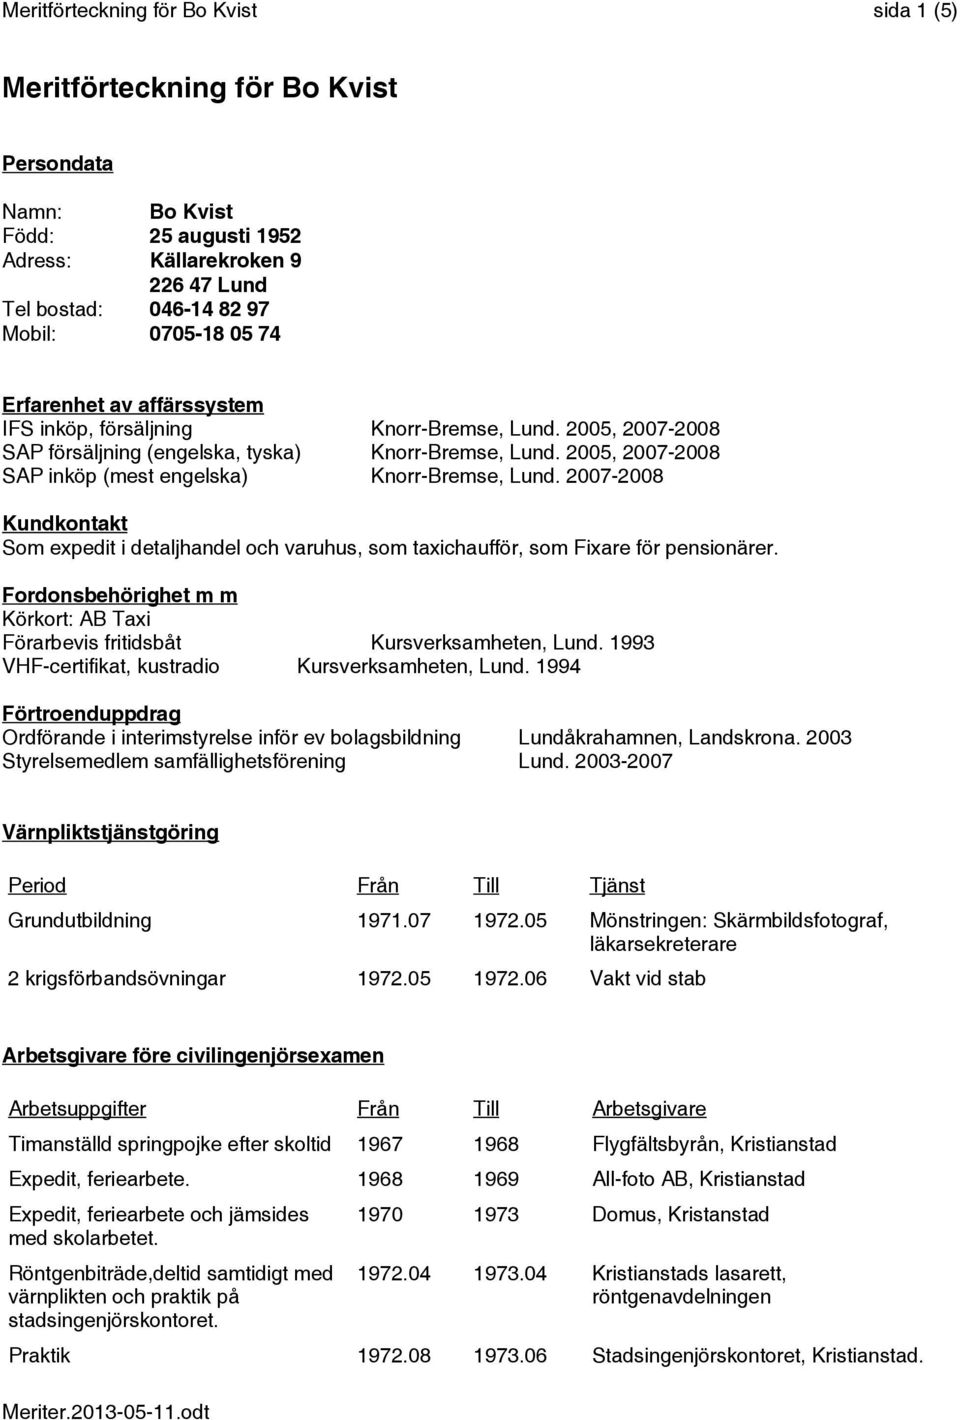 2005, 2007-2008 SAP inköp (mest engelska) Knorr-Bremse, Lund. 2007-2008 Kundkontakt Som expedit i detaljhandel och varuhus, som taxichaufför, som Fixare för pensionärer.